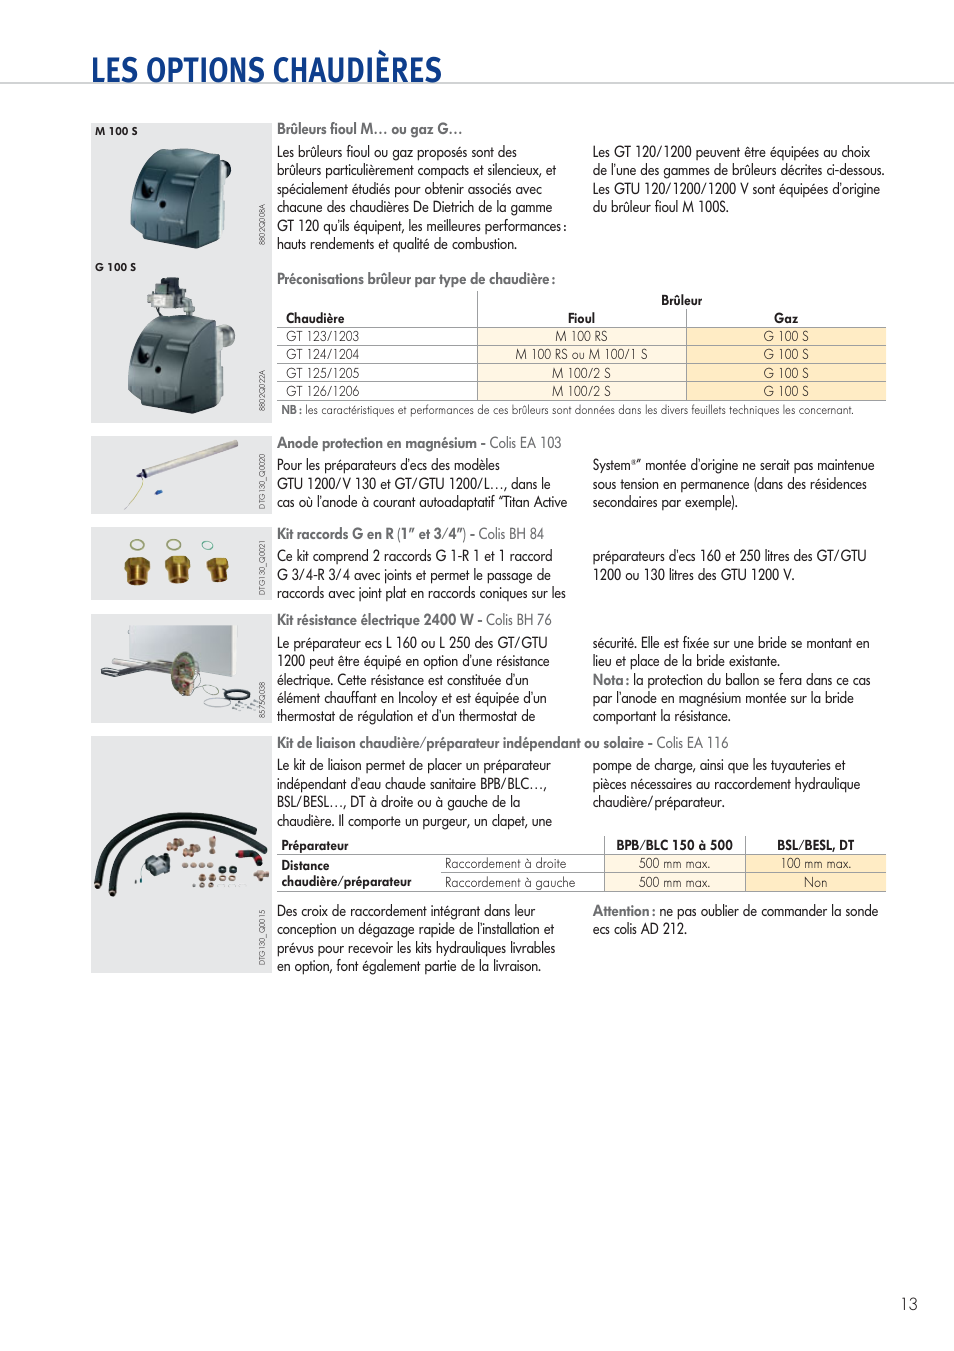 Les options chaudières | DE DIETRICH GT 120 Manuel d'utilisation | Page 13 / 20